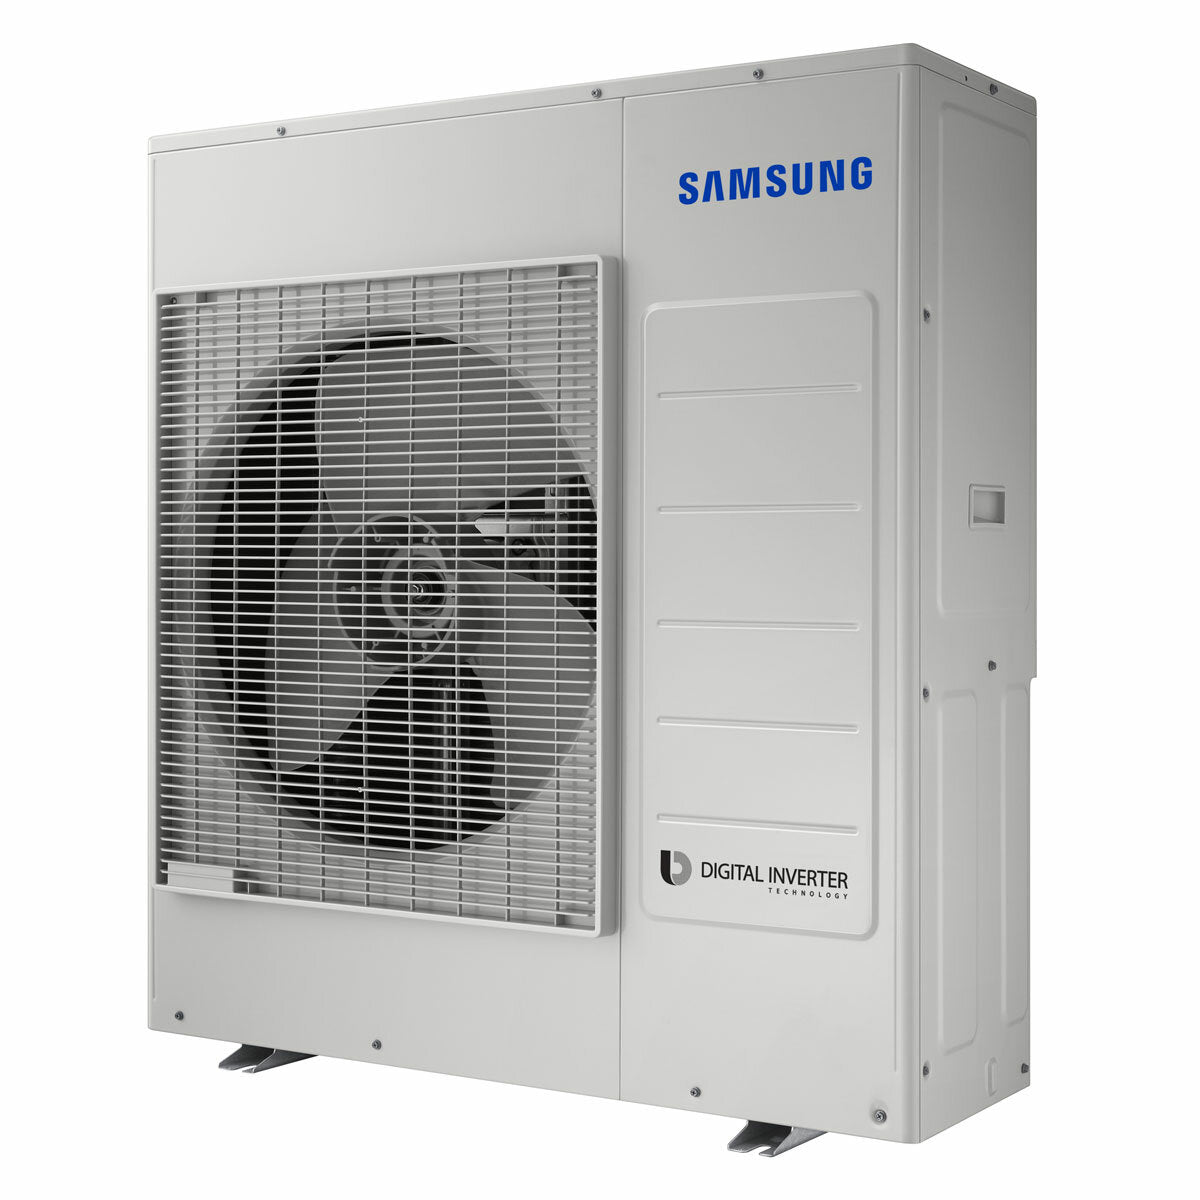 Samsung windfree Klimaanlage Avant Penta Split 7000 + 9000 + 9000 + 9000 + 12000 BTU Inverter A++ WLAN Außengerät 10,0 kW